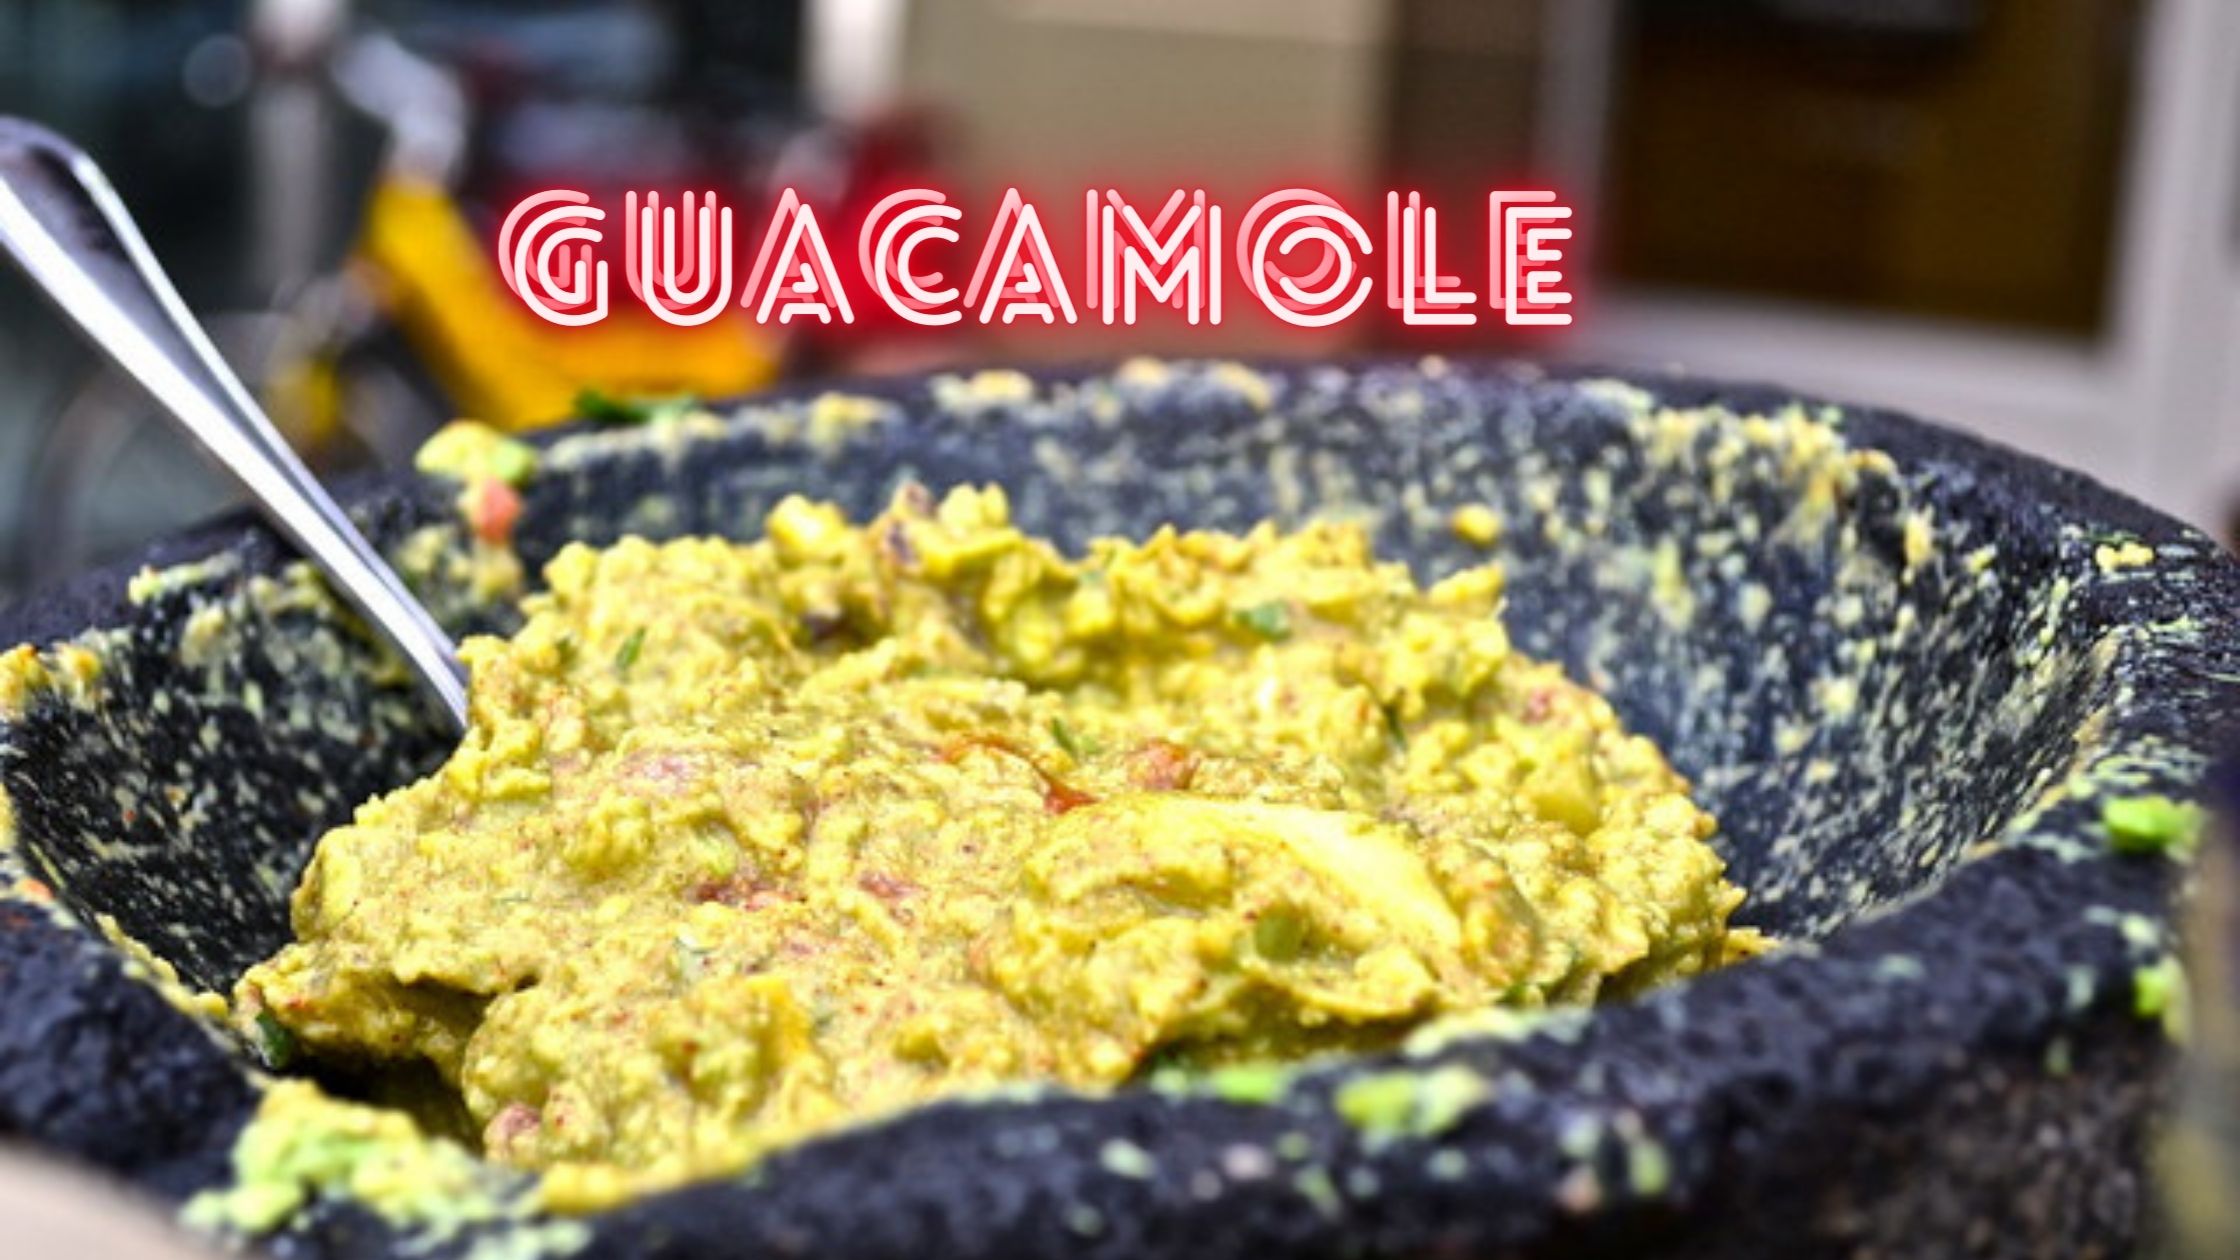 Rocco's Tacos Guacamole